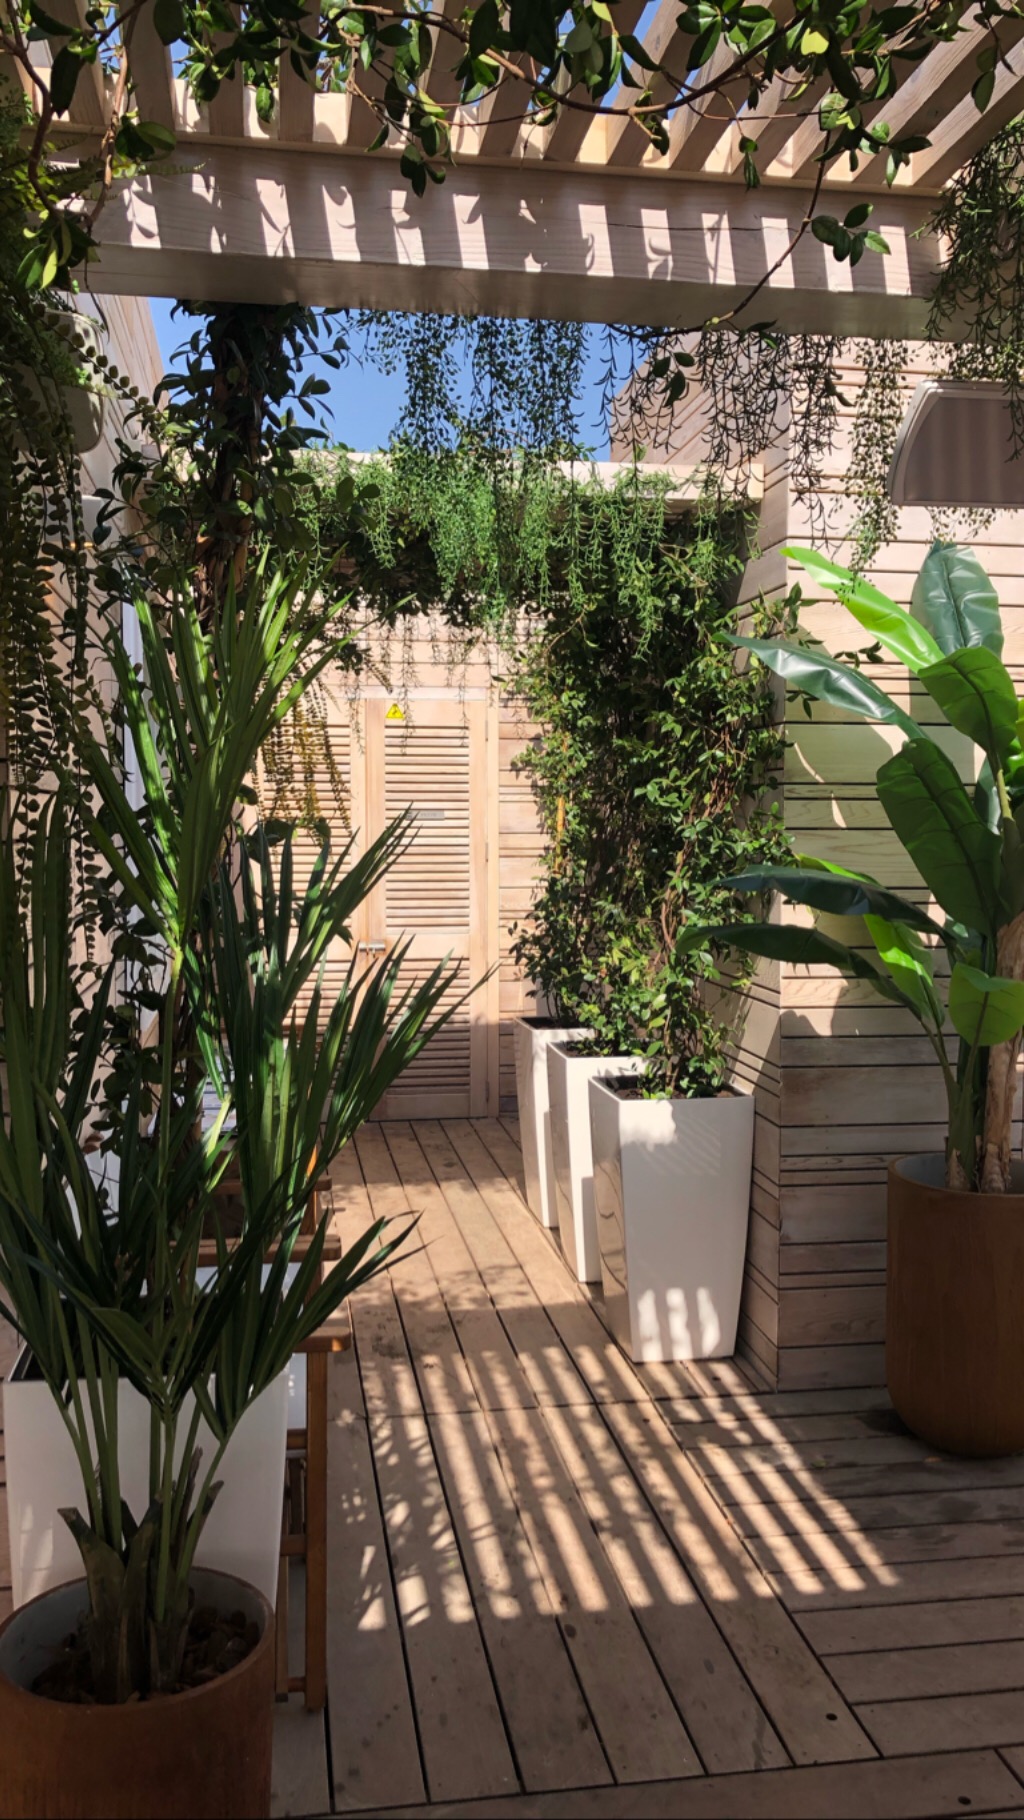 Des plantes sur une terrasse pour améliorer le cadre de vie